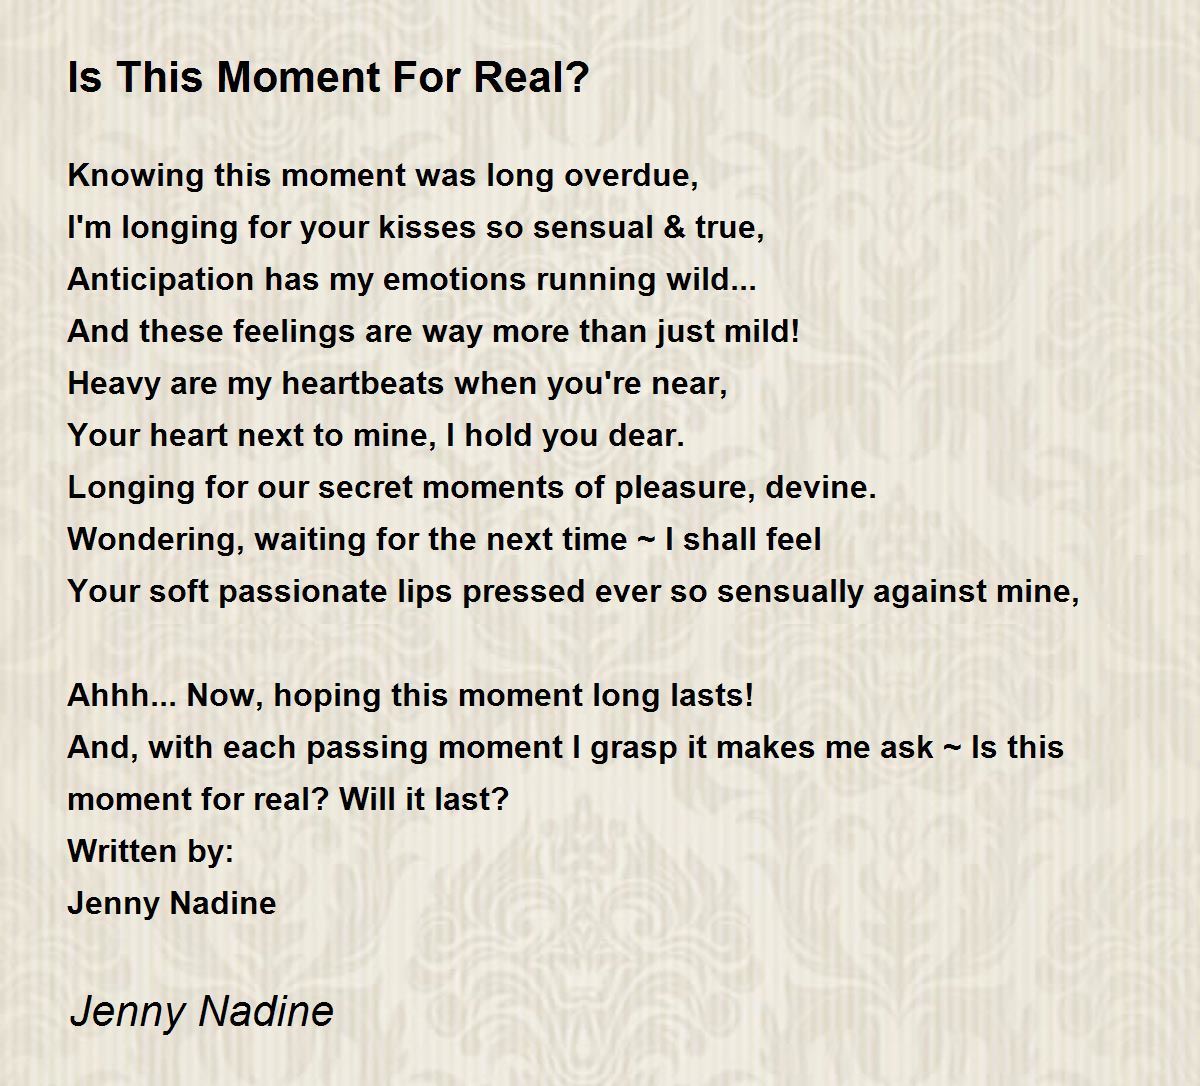 Is This Moment For Real? - Is This Moment For Real? Poem by Jenny Nadine